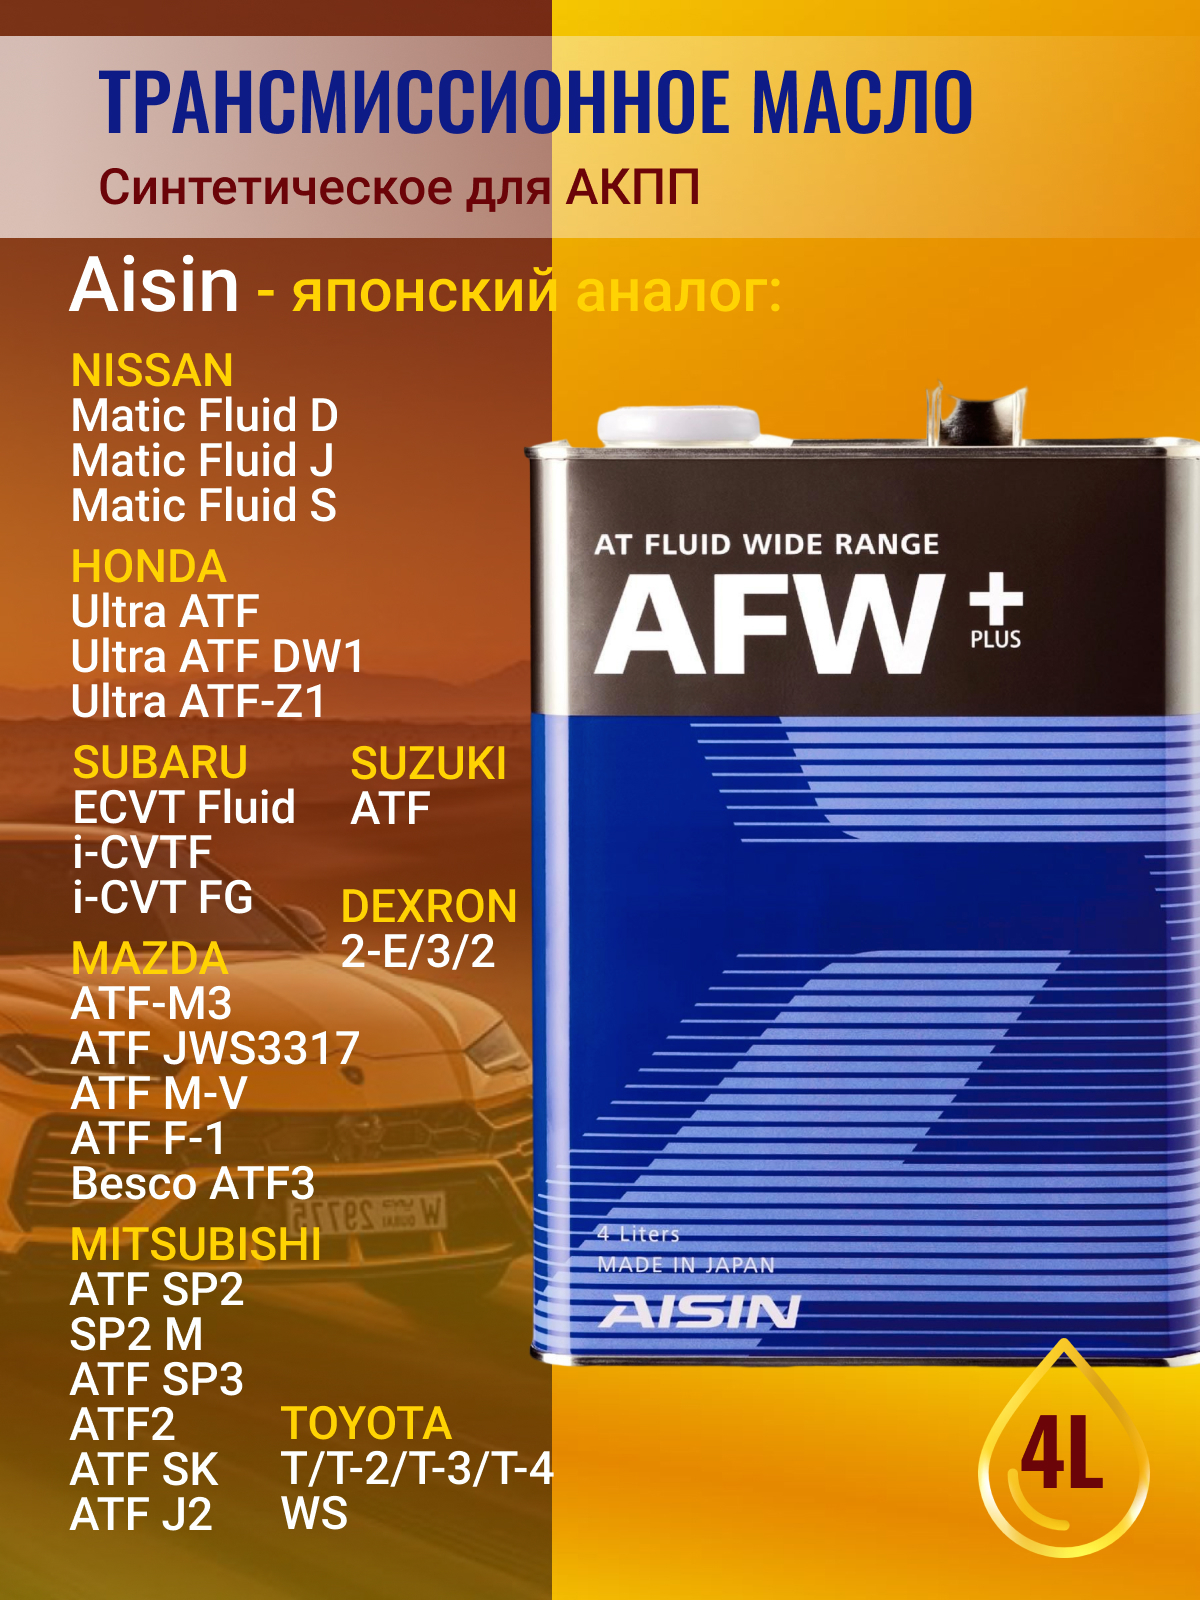 Atf afw. AISIN ATF AFW. AISIN ATF AFW+ артикул. AISIN AFW+ 1л. Масло трансмиссионное ATF wide range AFW+ 4л.